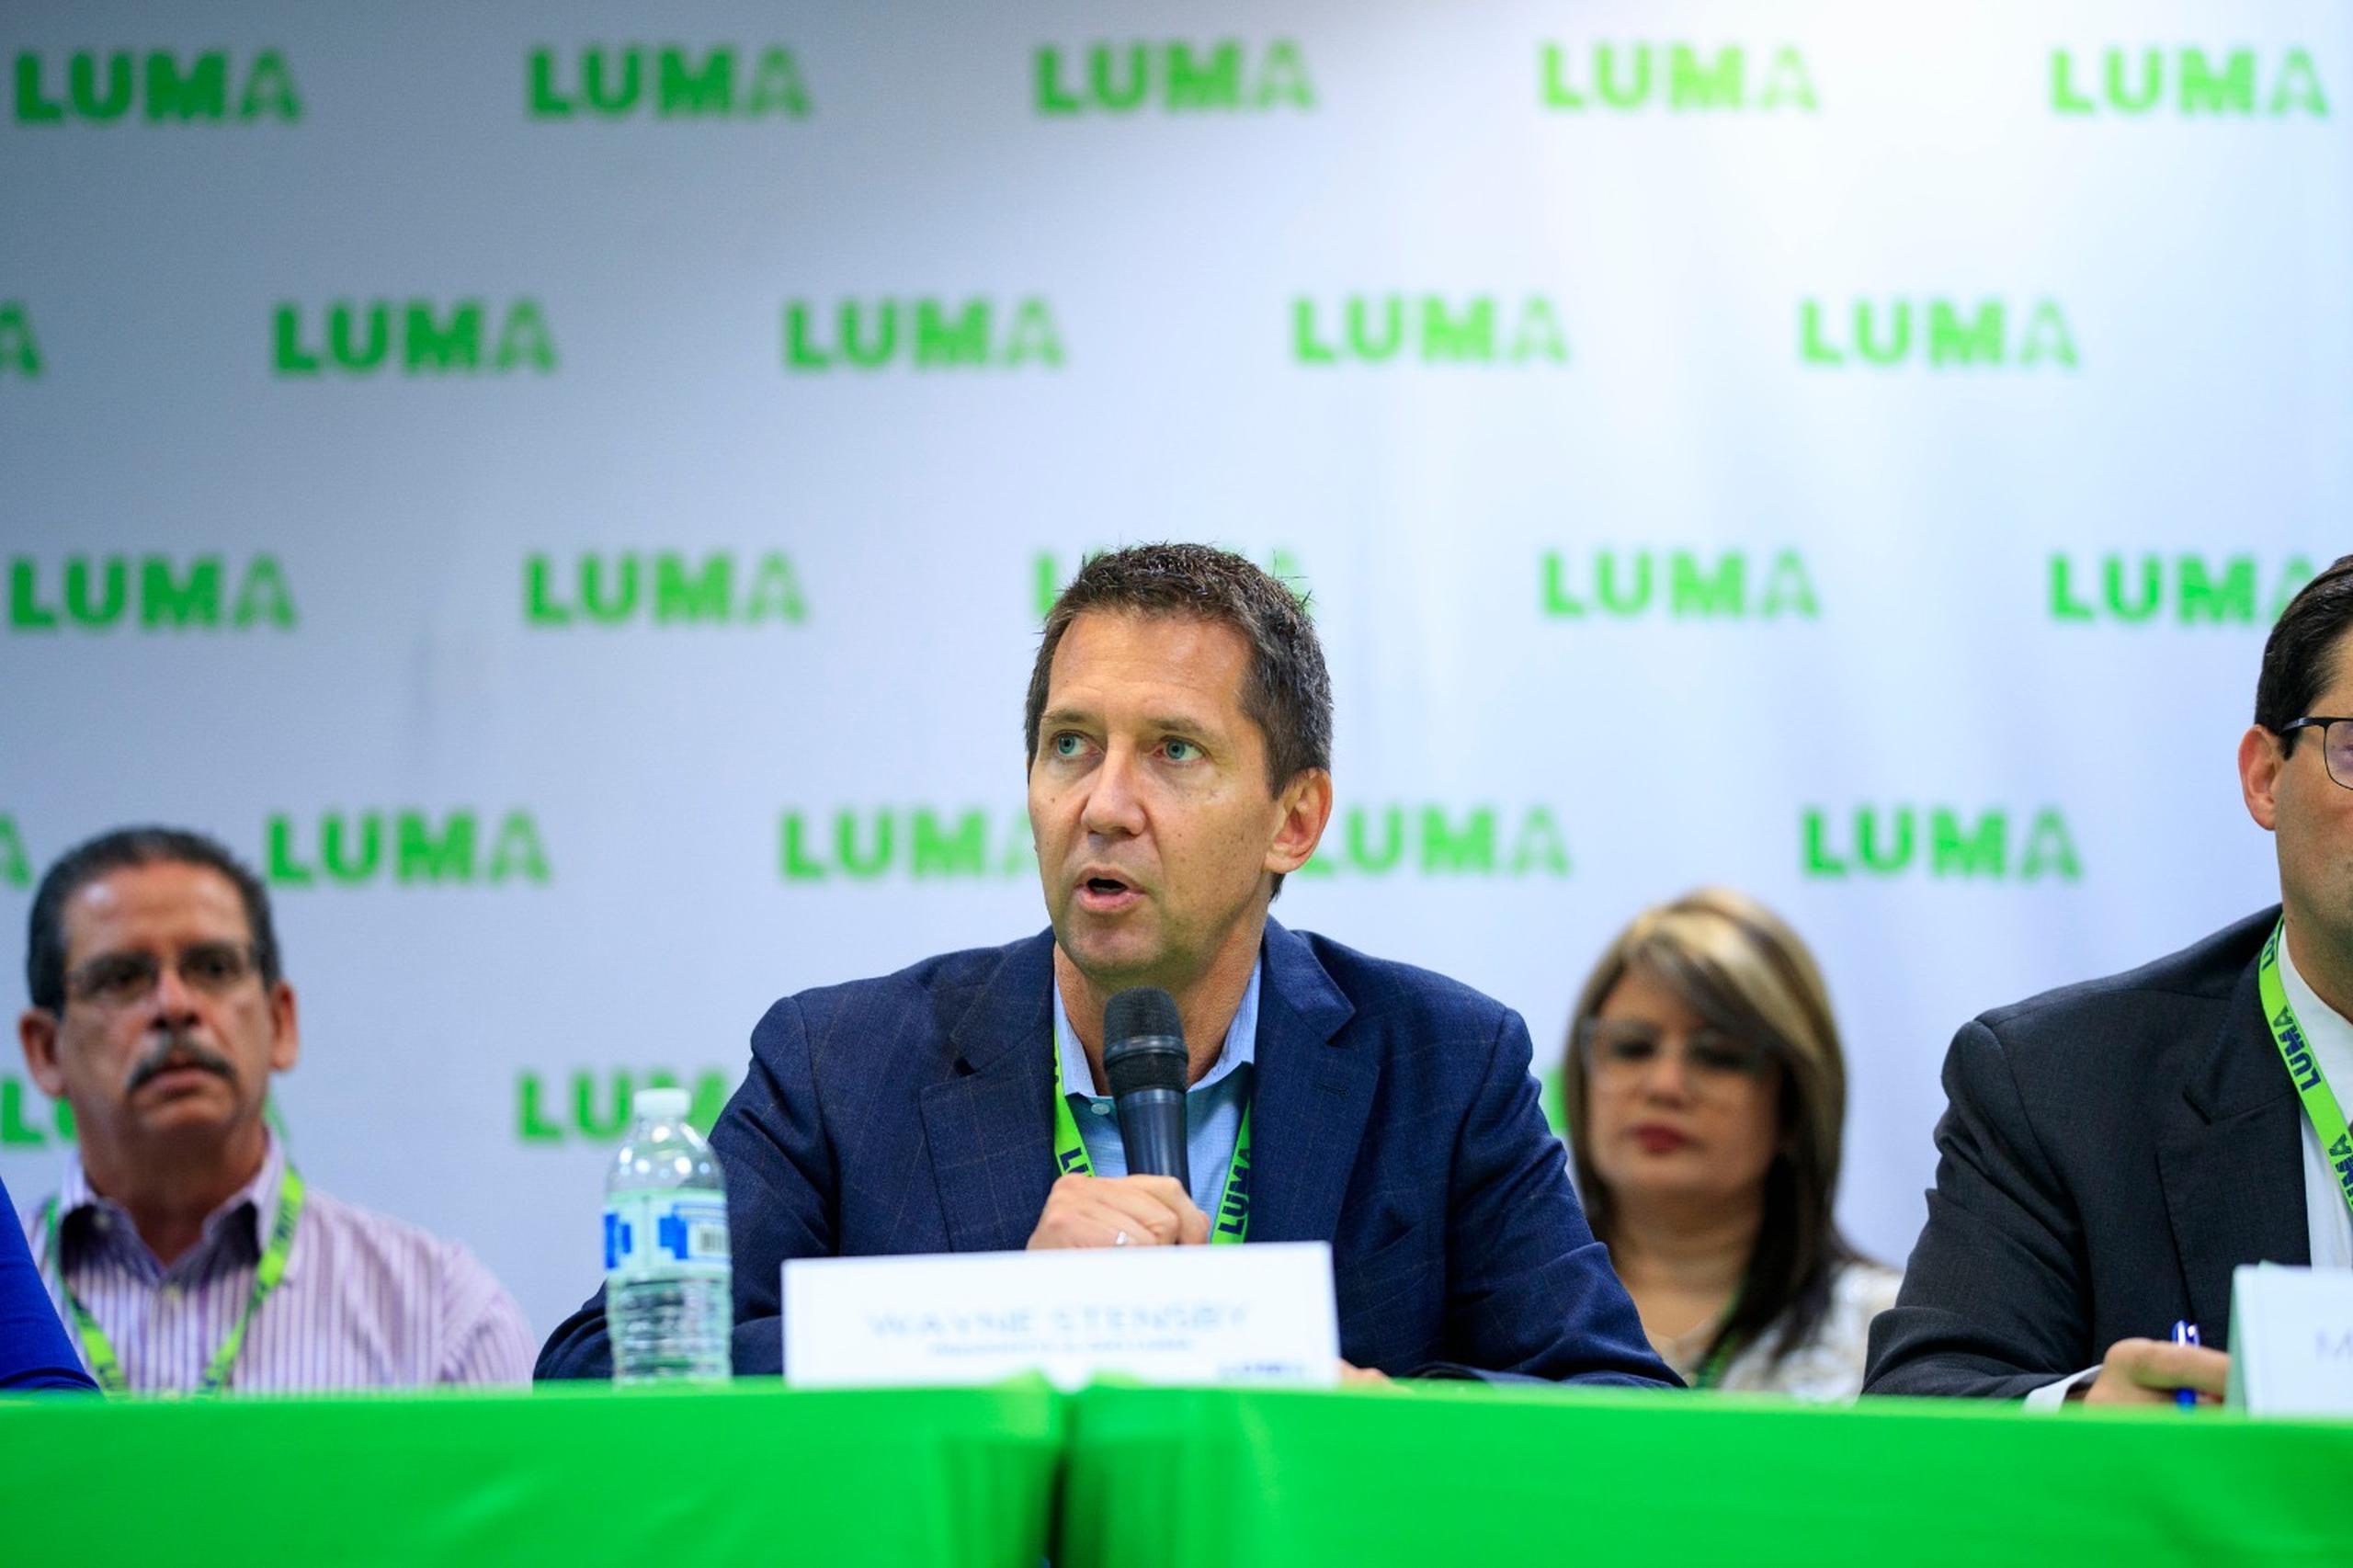 El presidente de LUMA Energy, Wayne Stensby, indicó que la compensación de Richard E. Brown, quien fungió entre 2006 y 2012 como vicepresidente de Operaciones de Quanta Technology, "no es un tema de conversación".